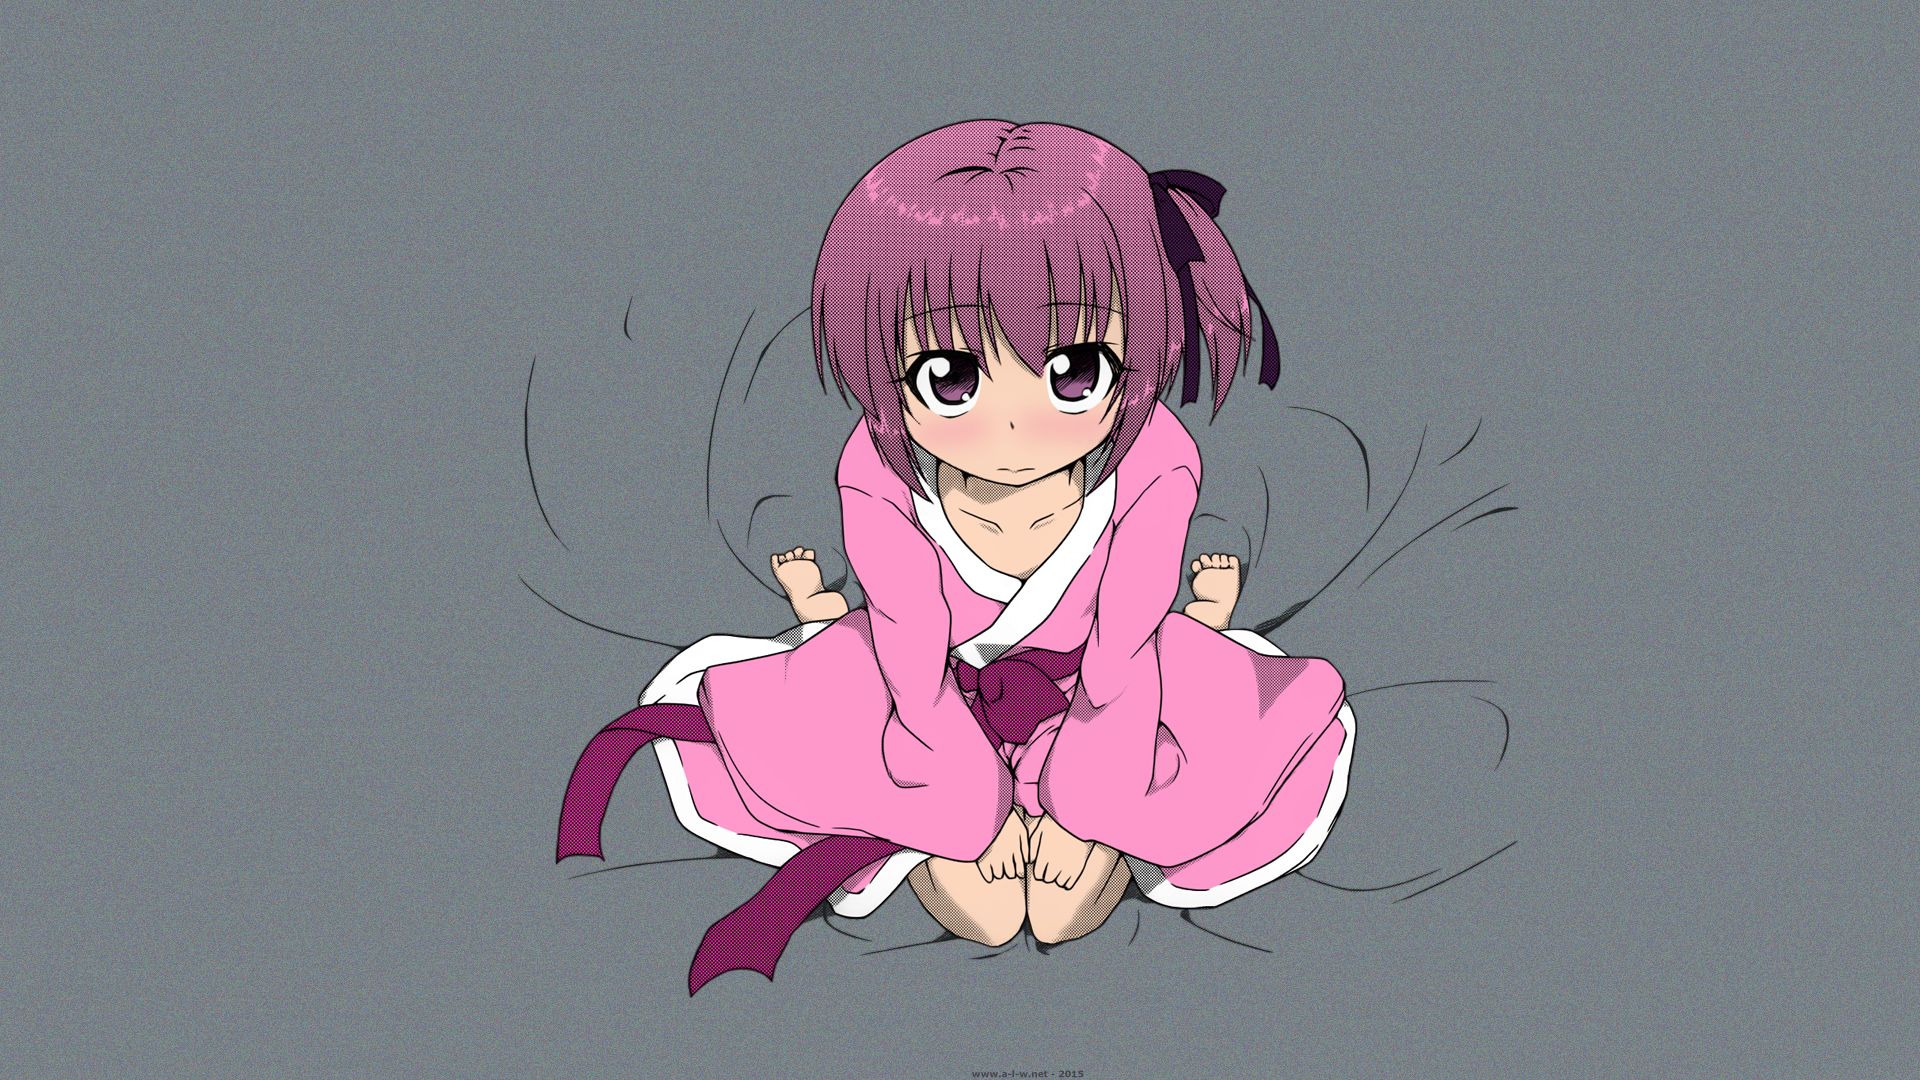 Anime 1920x1080 Ro-Kyu-Bu! Minato Tomoka yukata anime anime girls manga simple background pink hair purple eyes kneeling looking at viewer